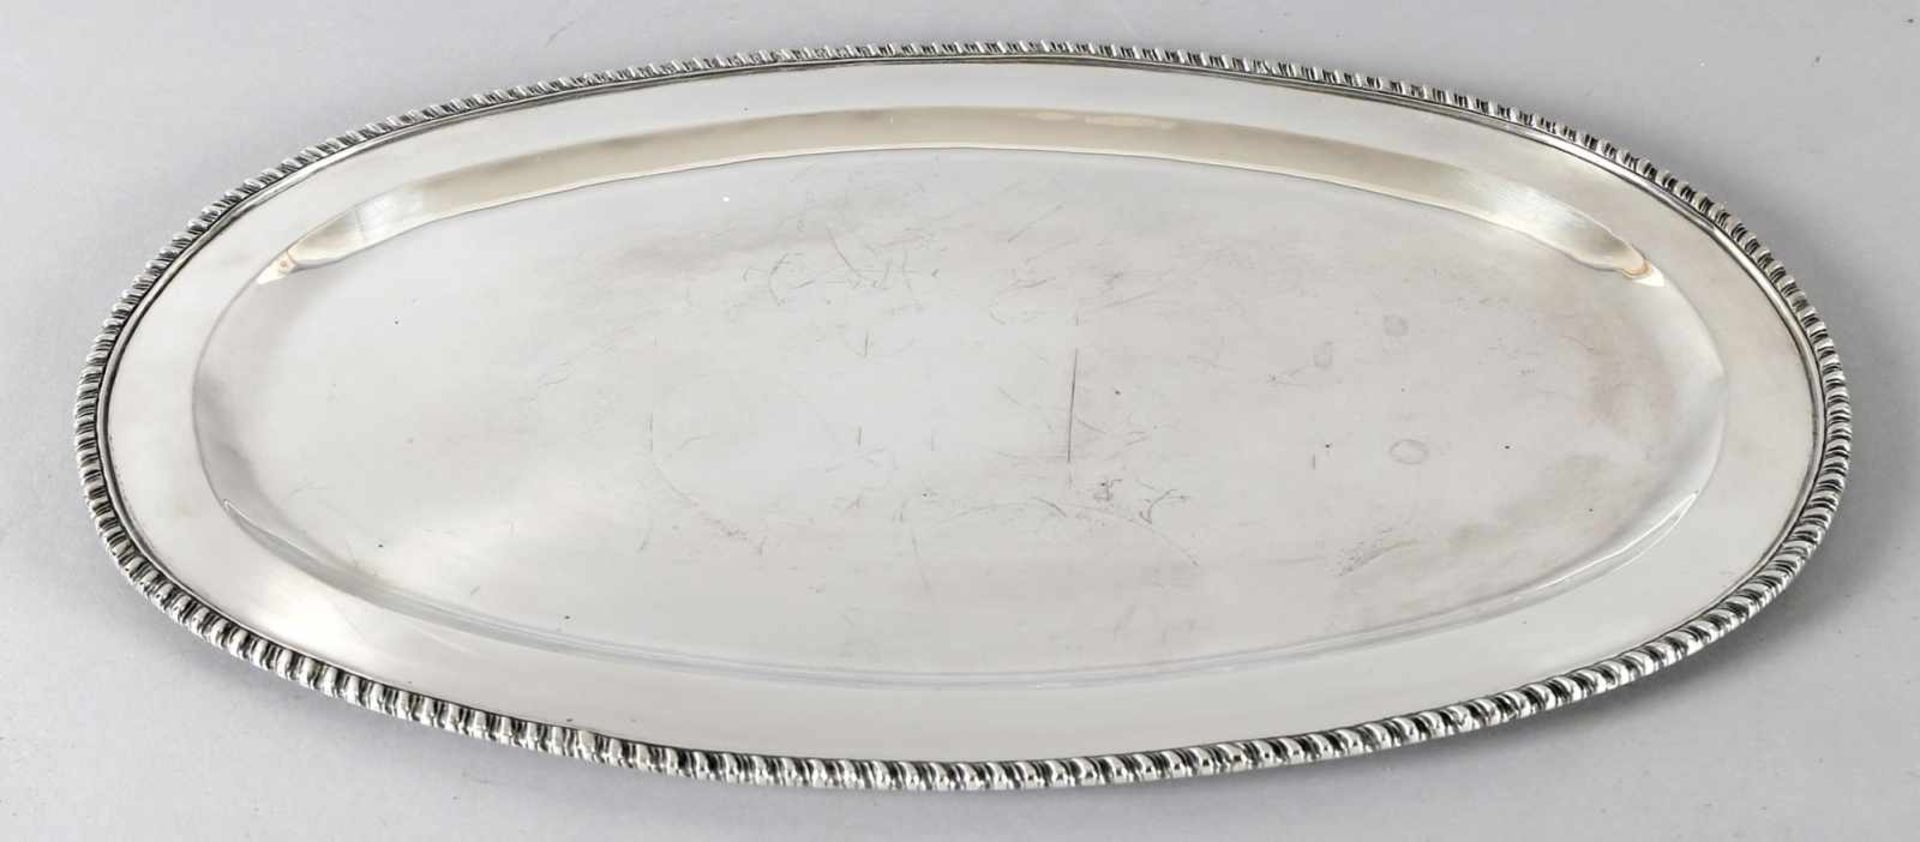 Großes ovales Silbertablett, 2. Hälfte 20. Jh.mit godroniertem Rand, 54 x 35 cm, auf Unterseite